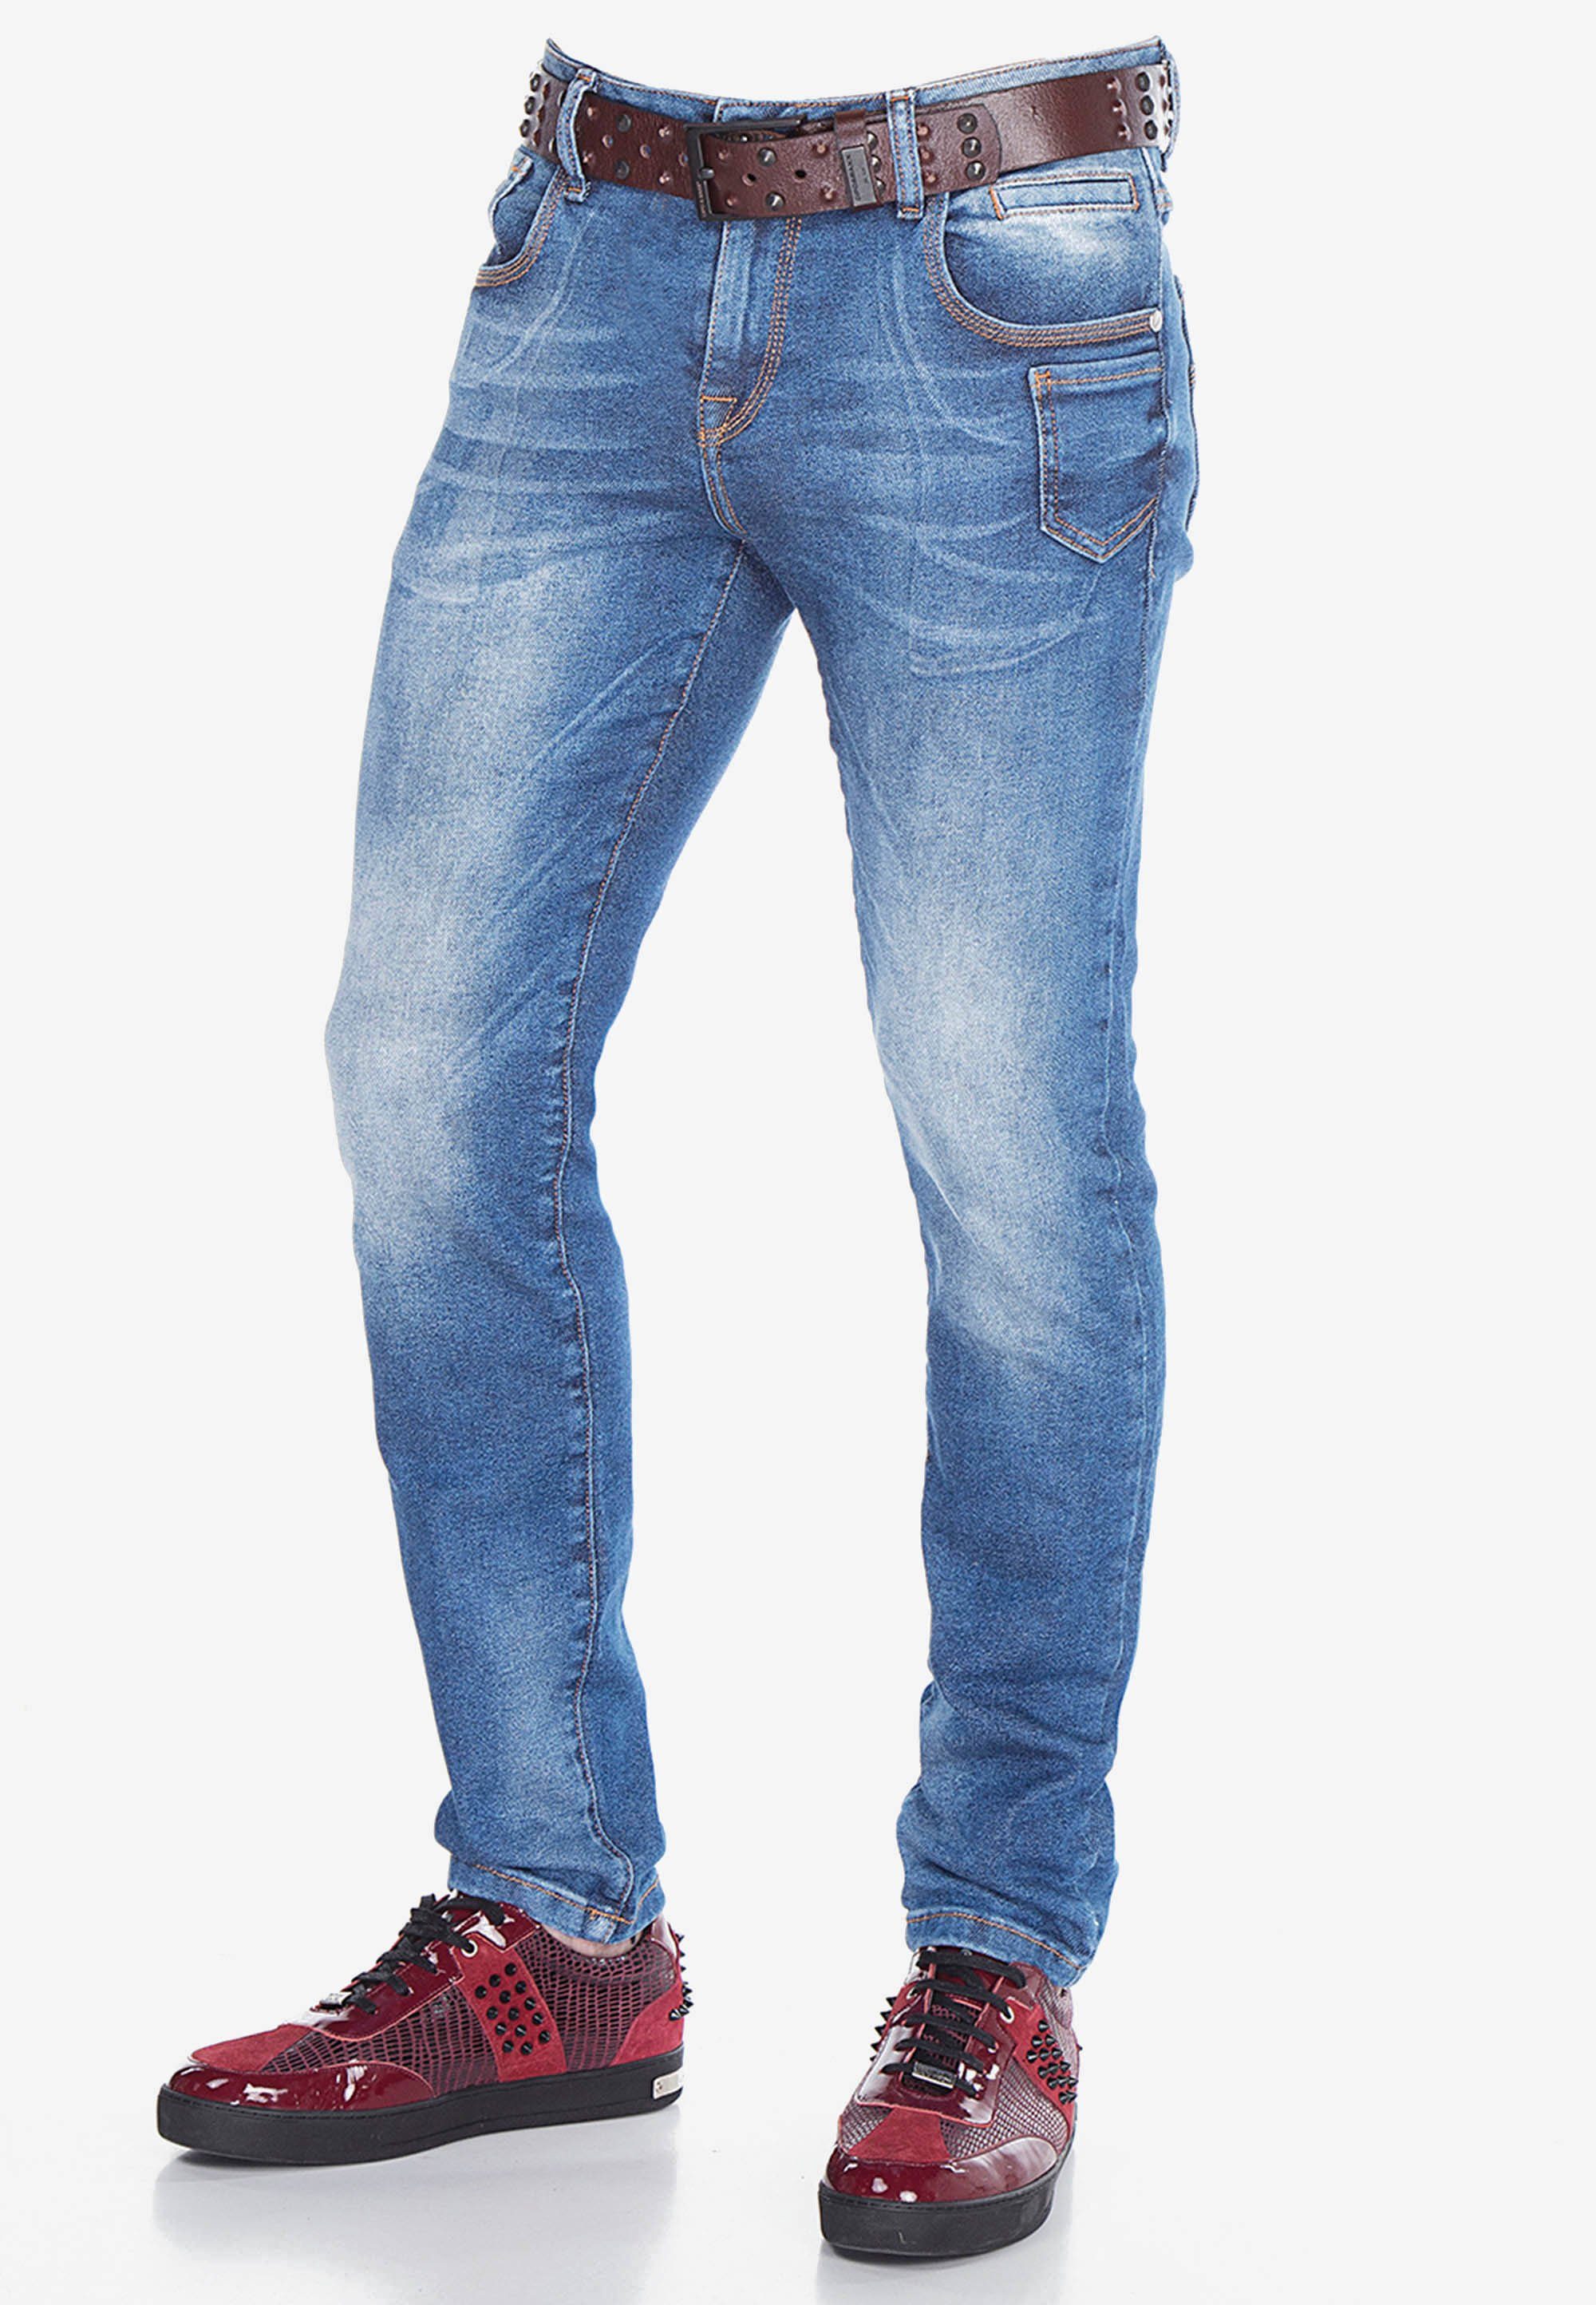 & Baxx klassischen Jeans 5-Pocket-Stil Bequeme im Cipo